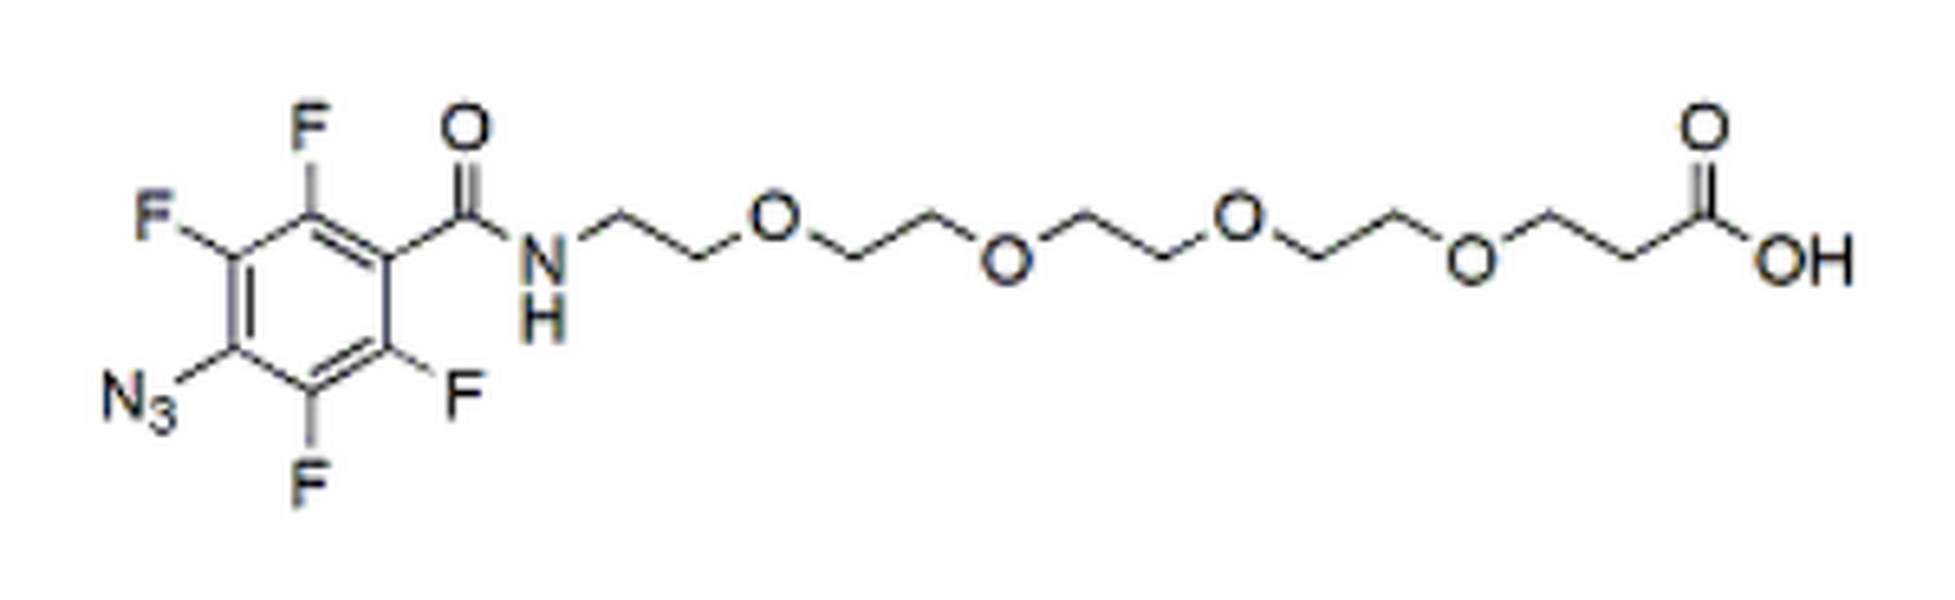 4-Azide-TFP-Amide-PEG4-acid